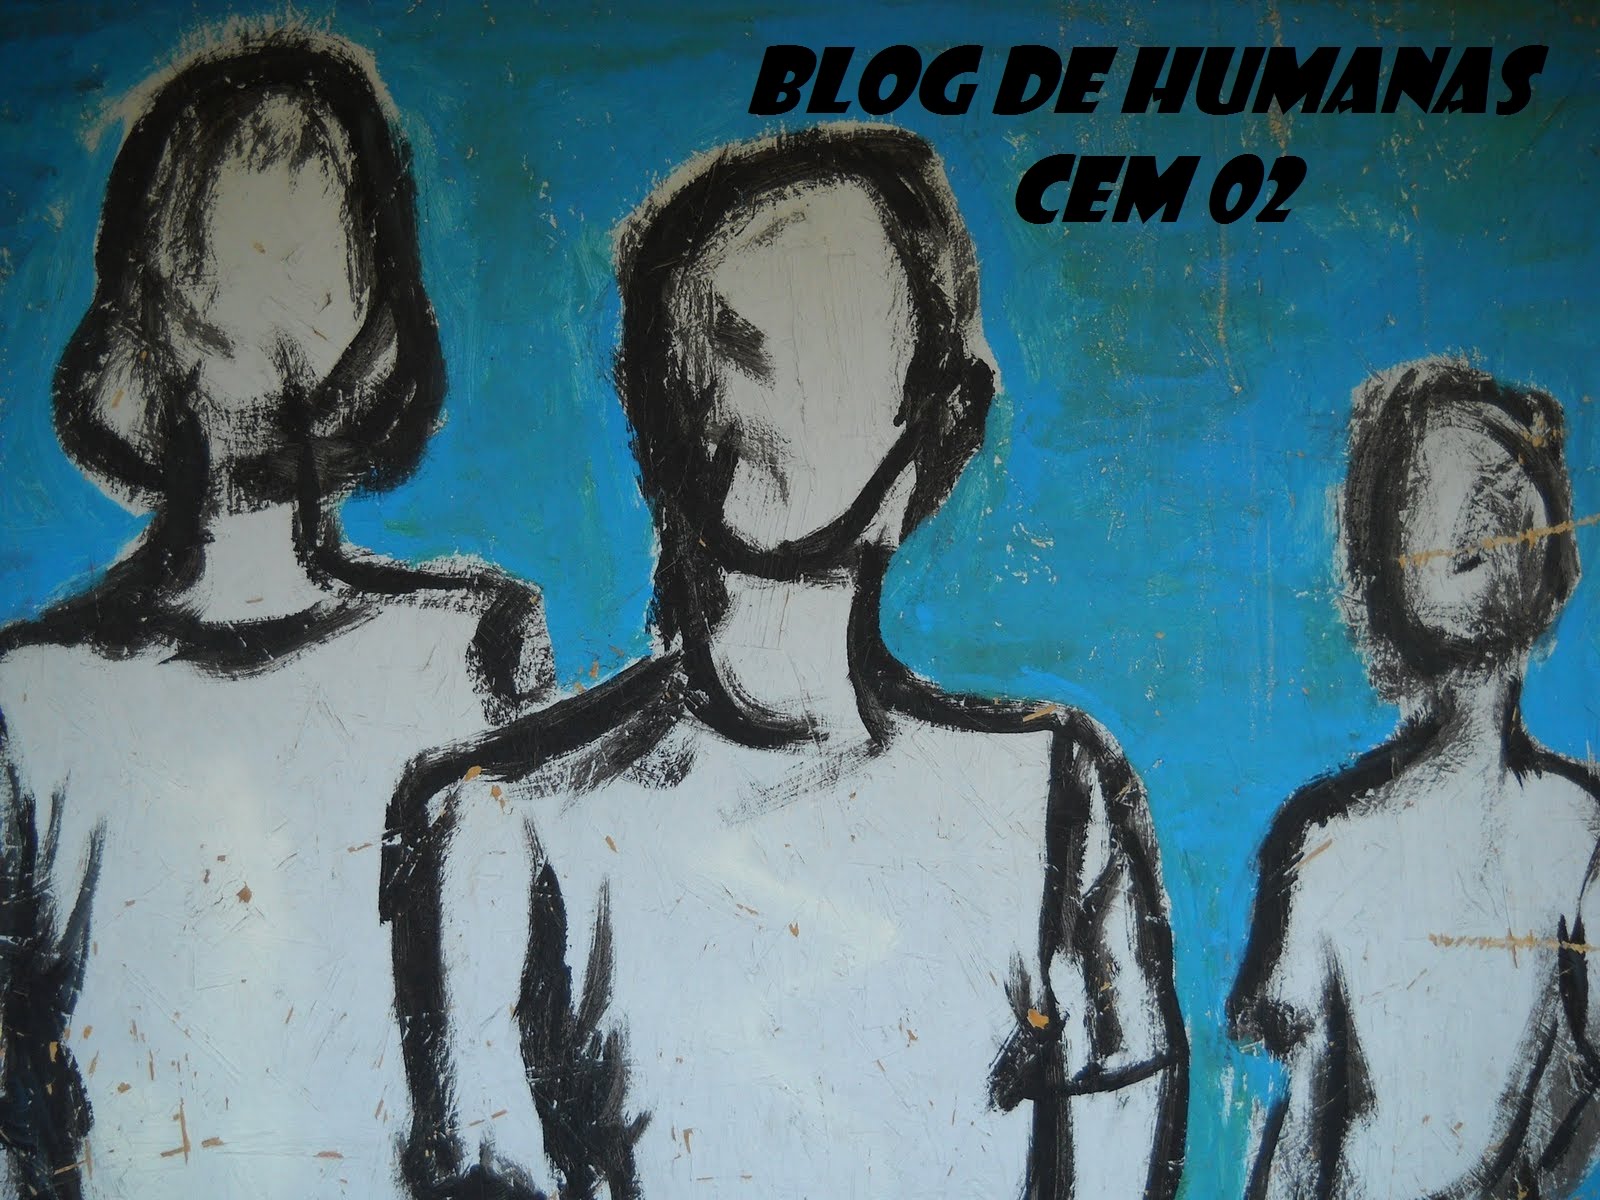 Blog de Humanas CEM 02